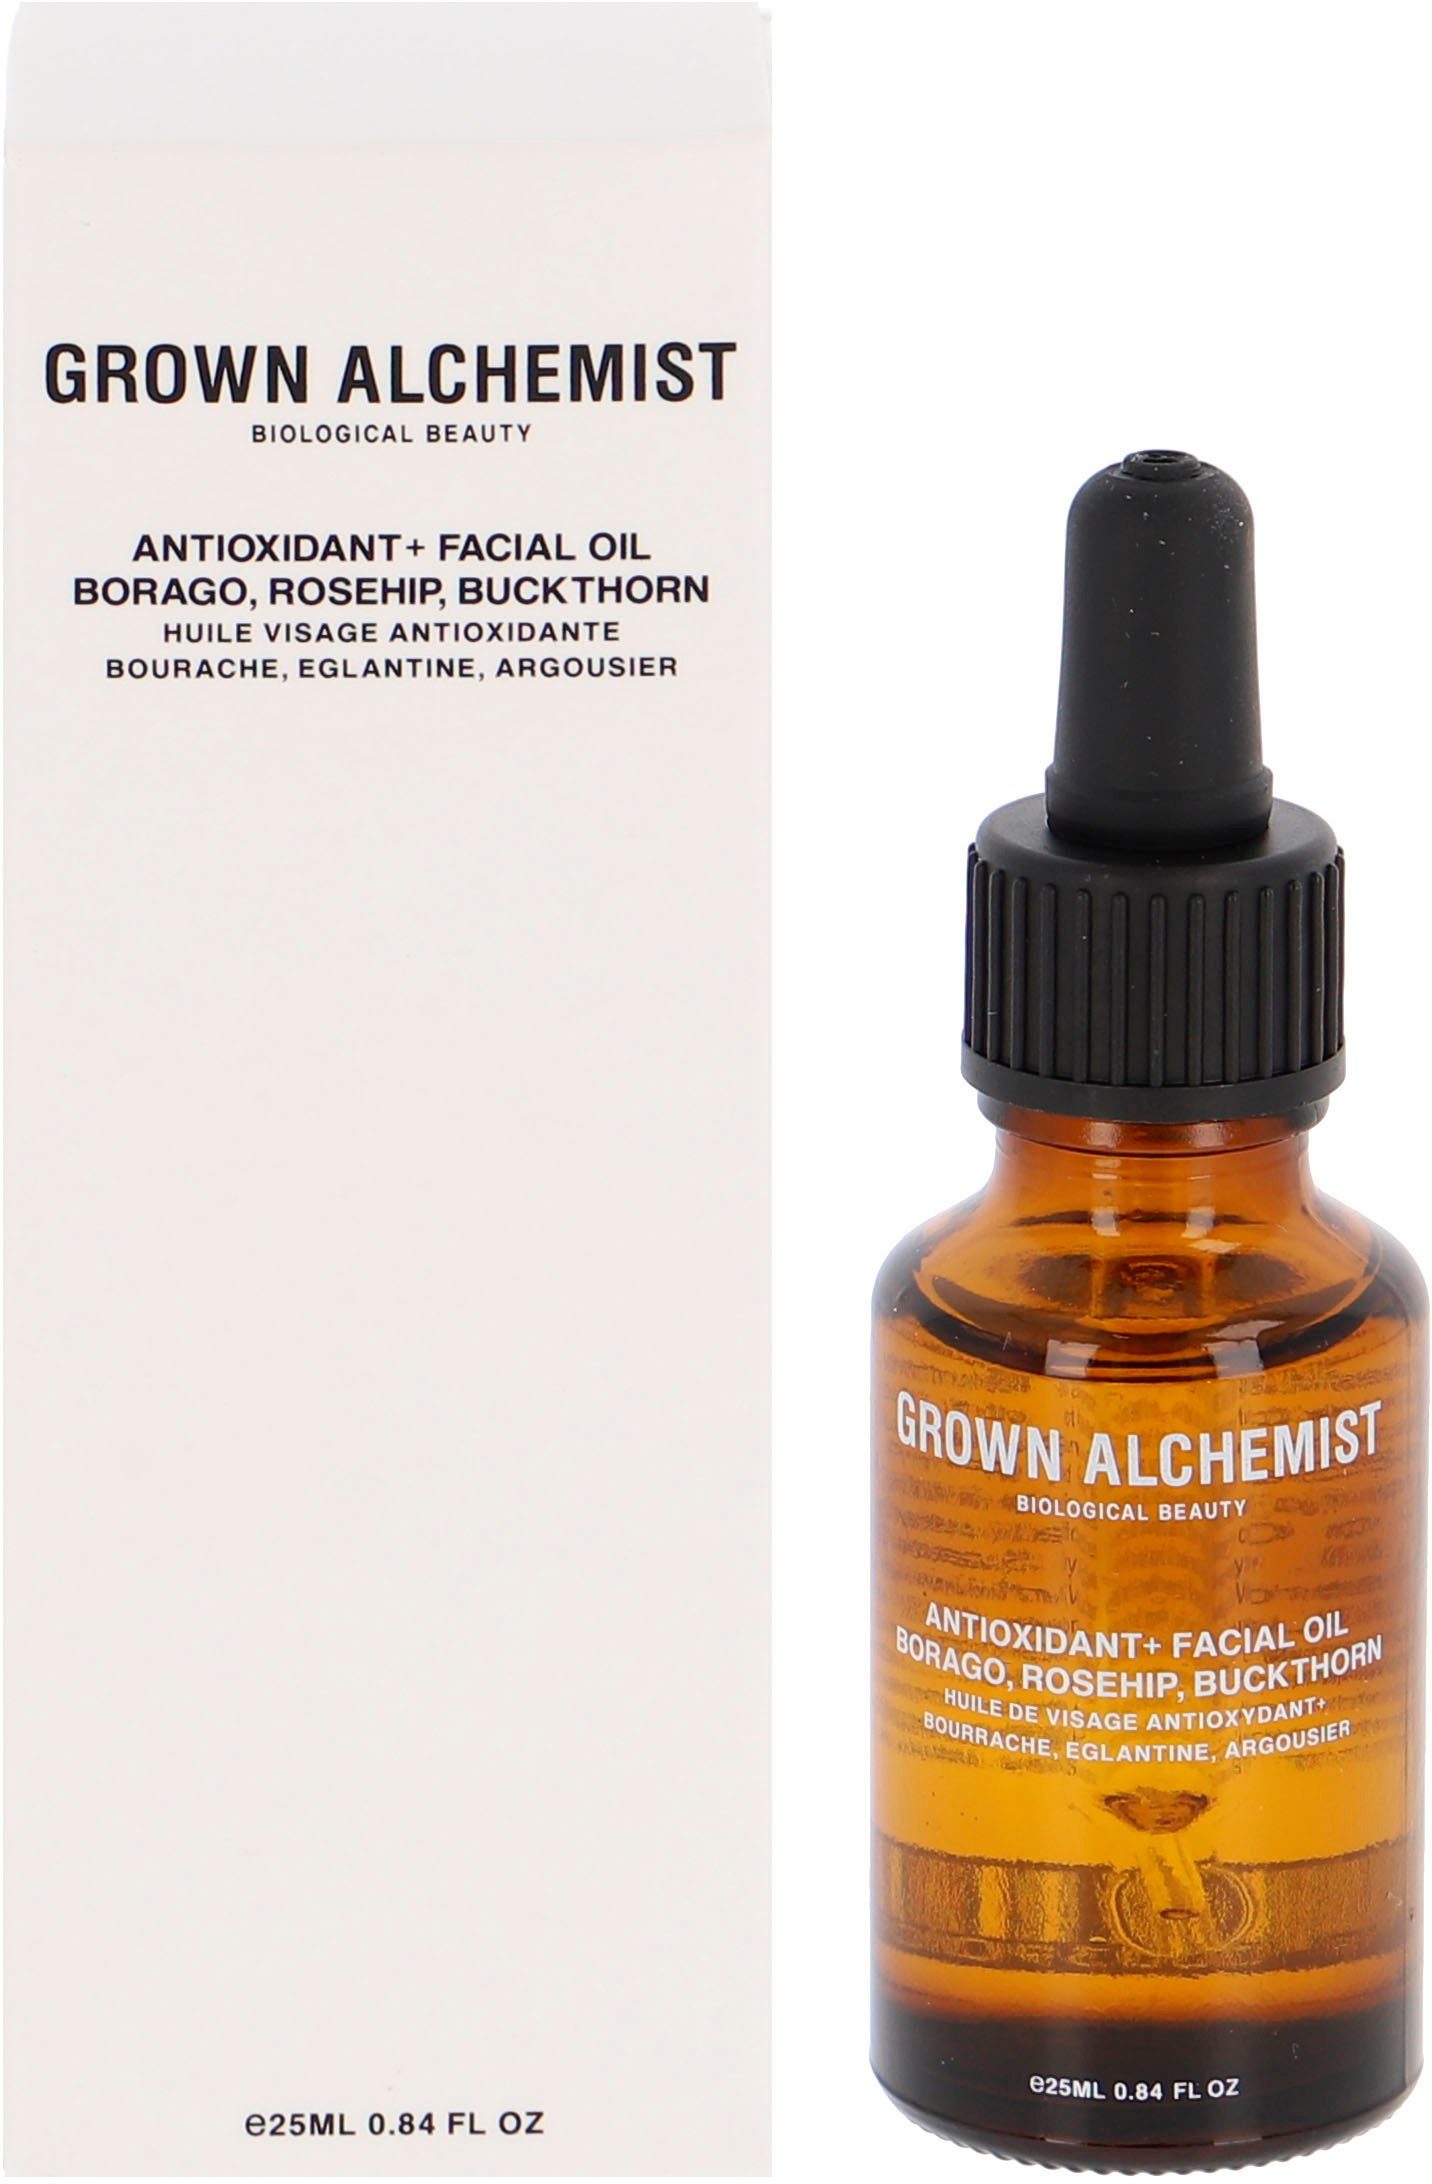 ALCHEMIST Anti-Oxidant+ GROWN Rosehip, Buckthorn Borago, Oil, Facial Gesichtsöl